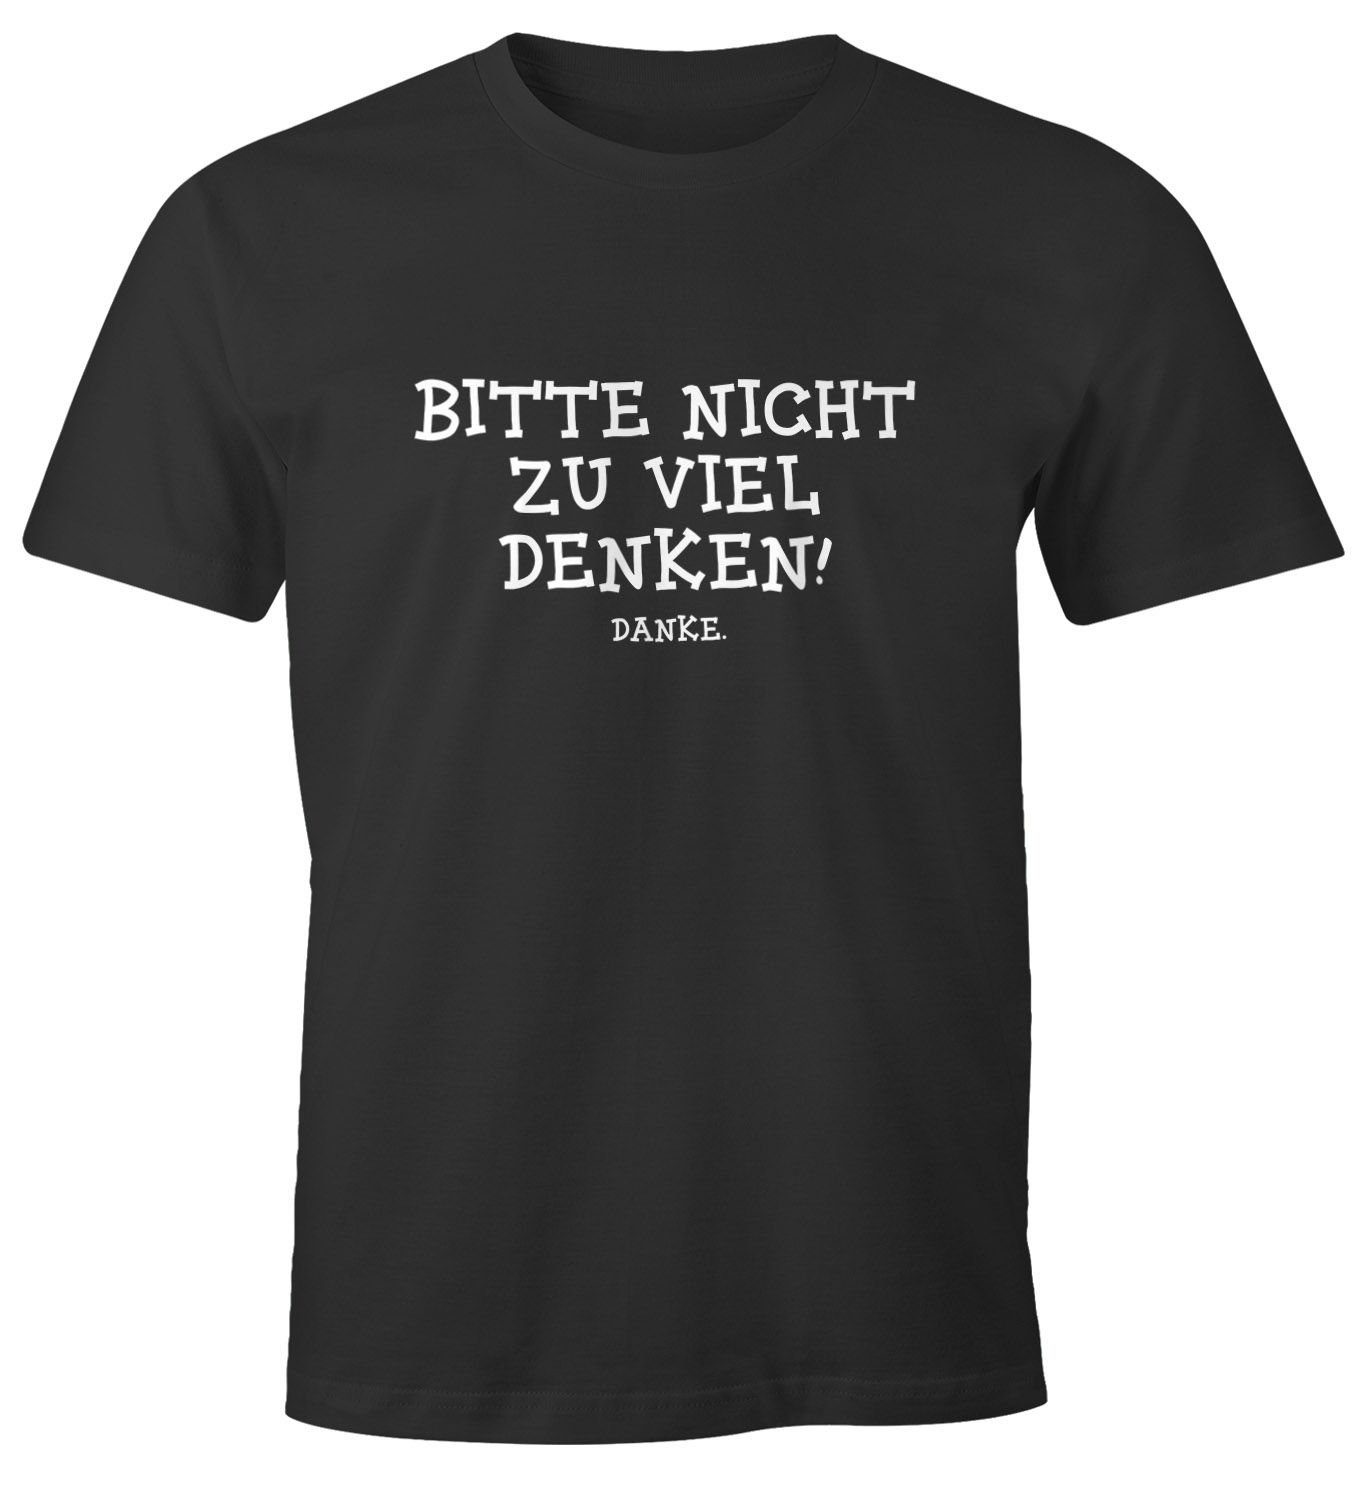 MoonWorks Print-Shirt Herren T-Shirt Bitte nicht zu viel denken. lustiges Spruch Fun-Shirt Moonworks® mit Print